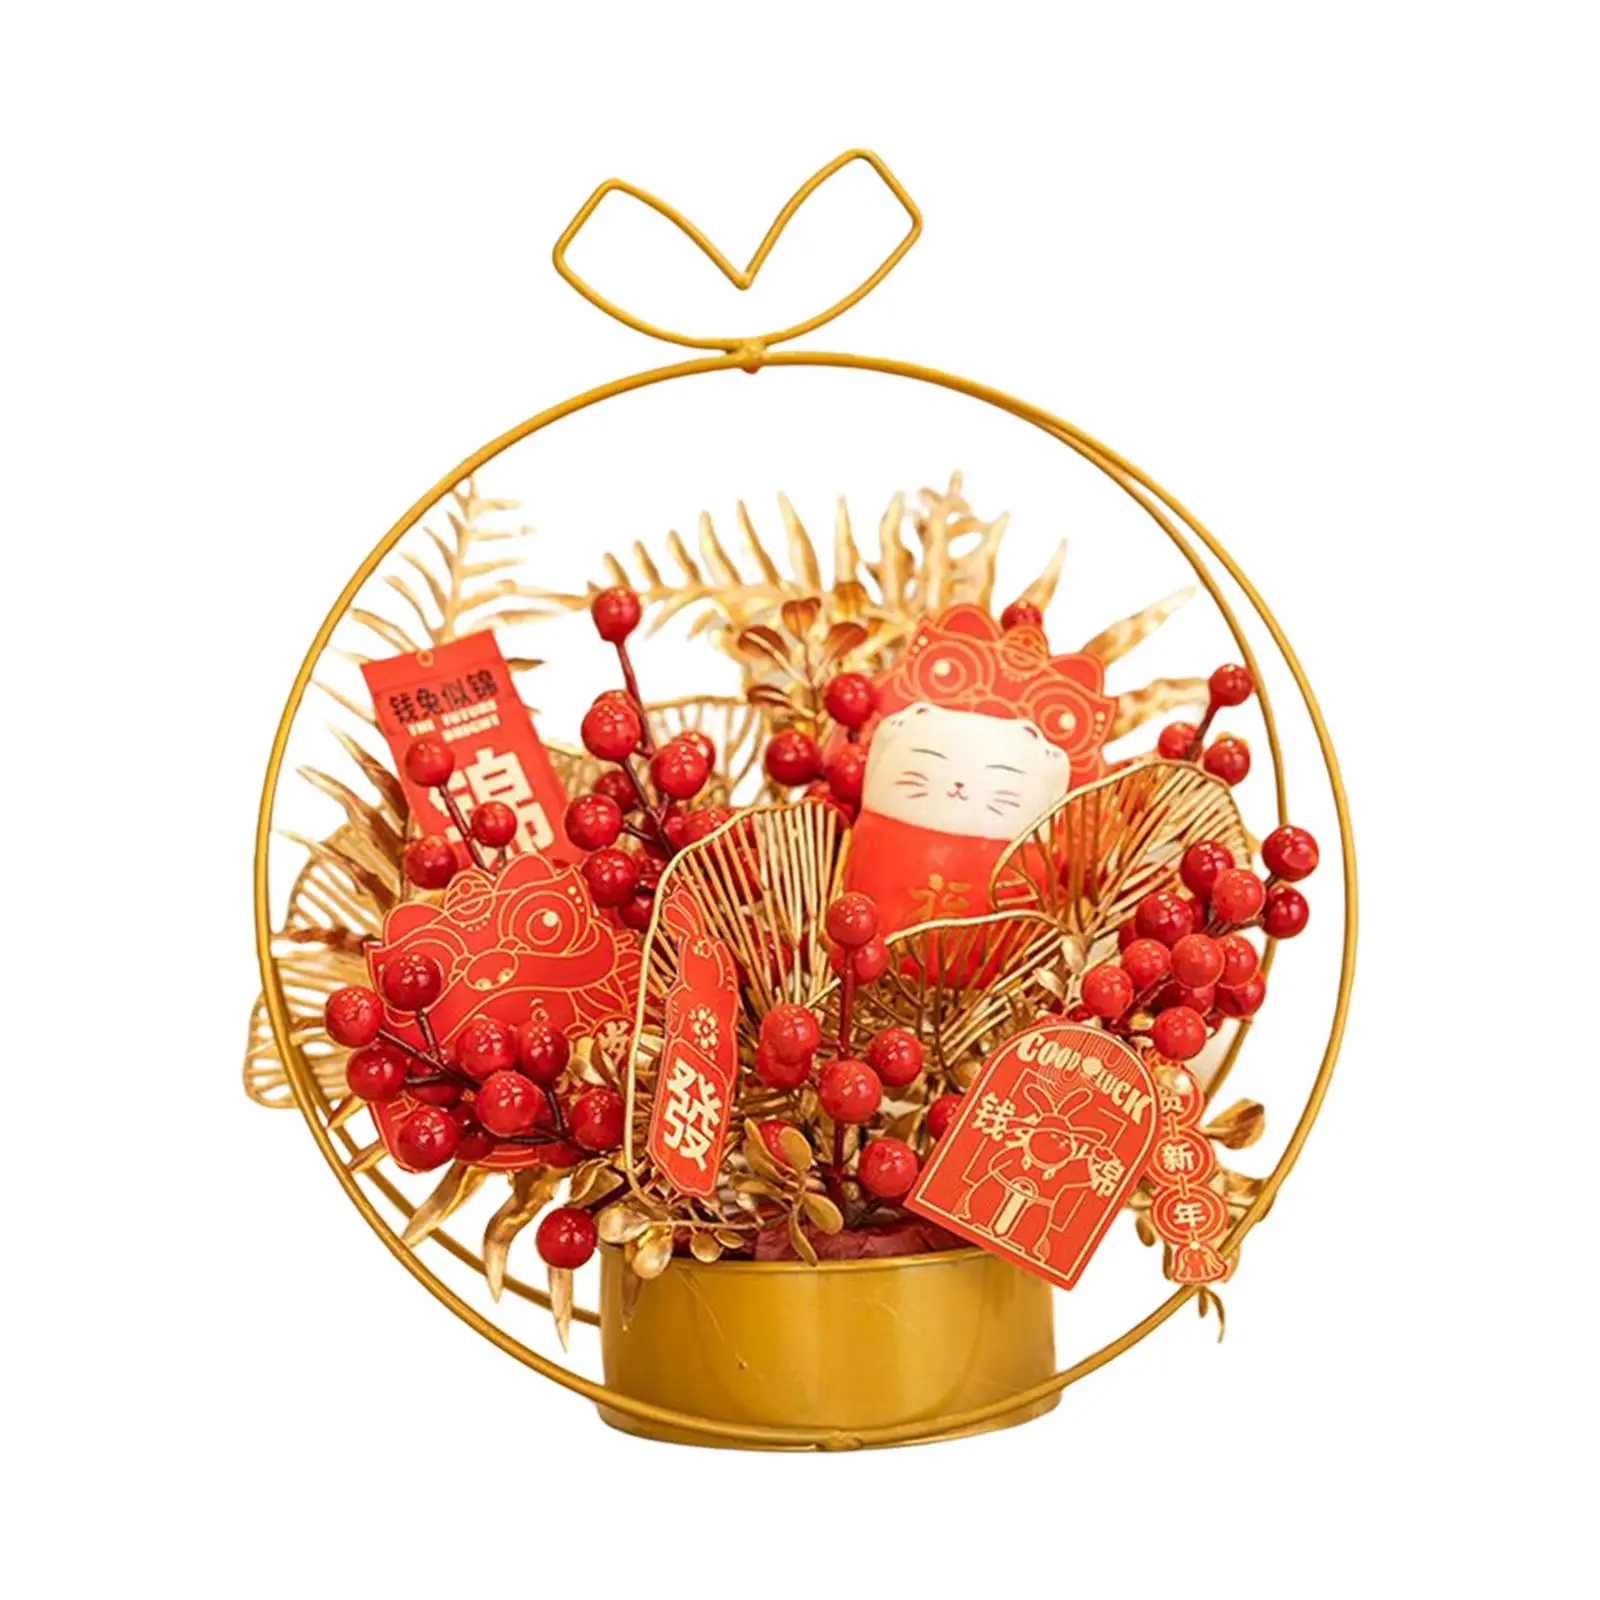 Chinese Flower Iron Basket Table Centerpiece Decor Decorative Lifelike